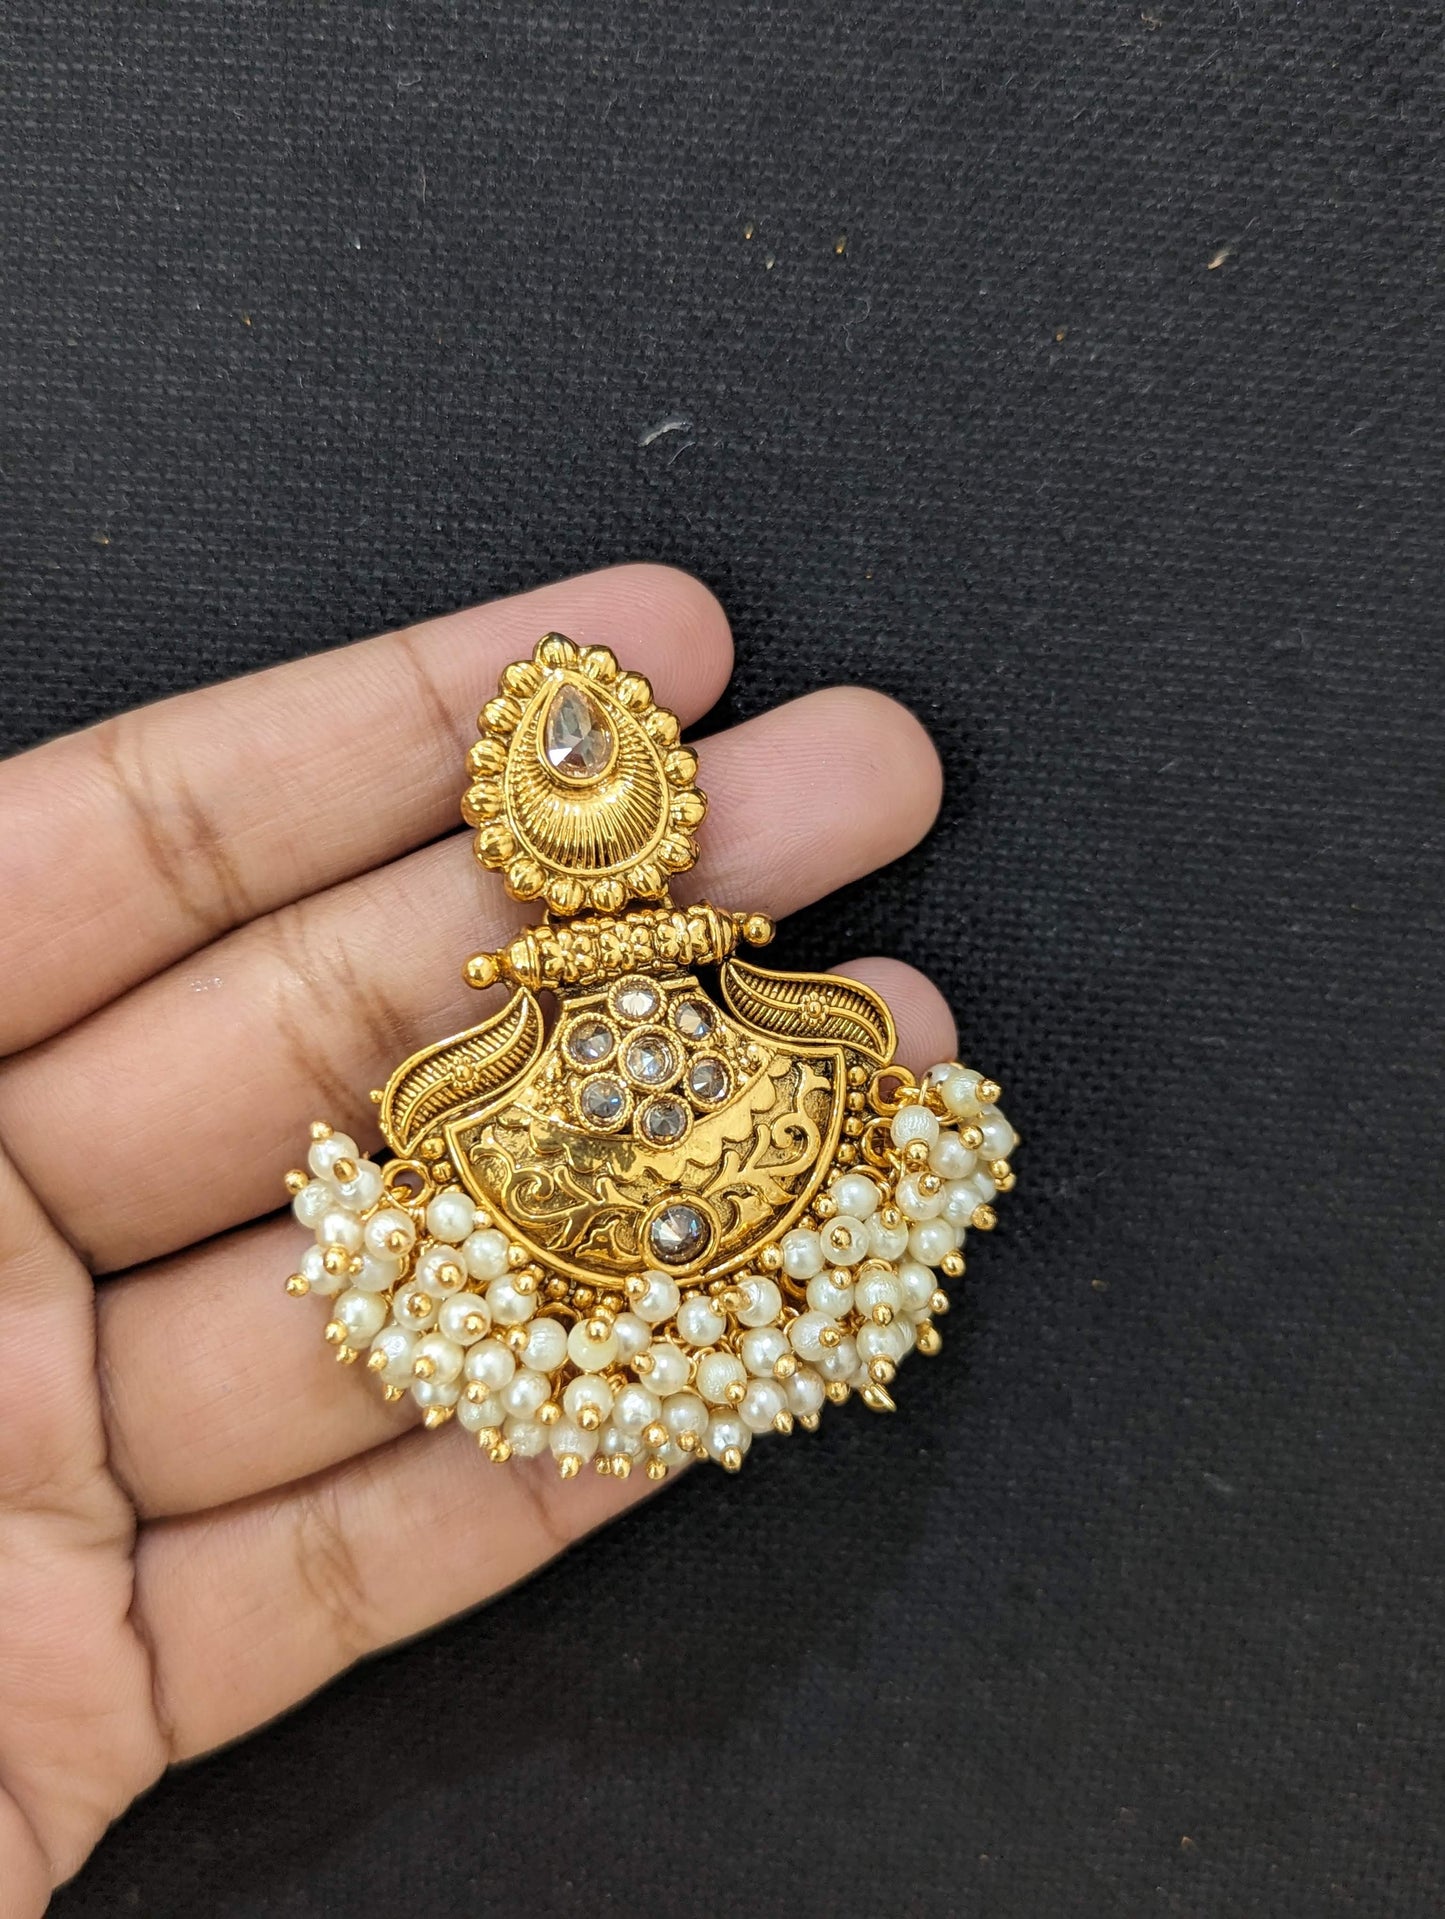 Shiny polki stone Gold plated Chandbali Earrings